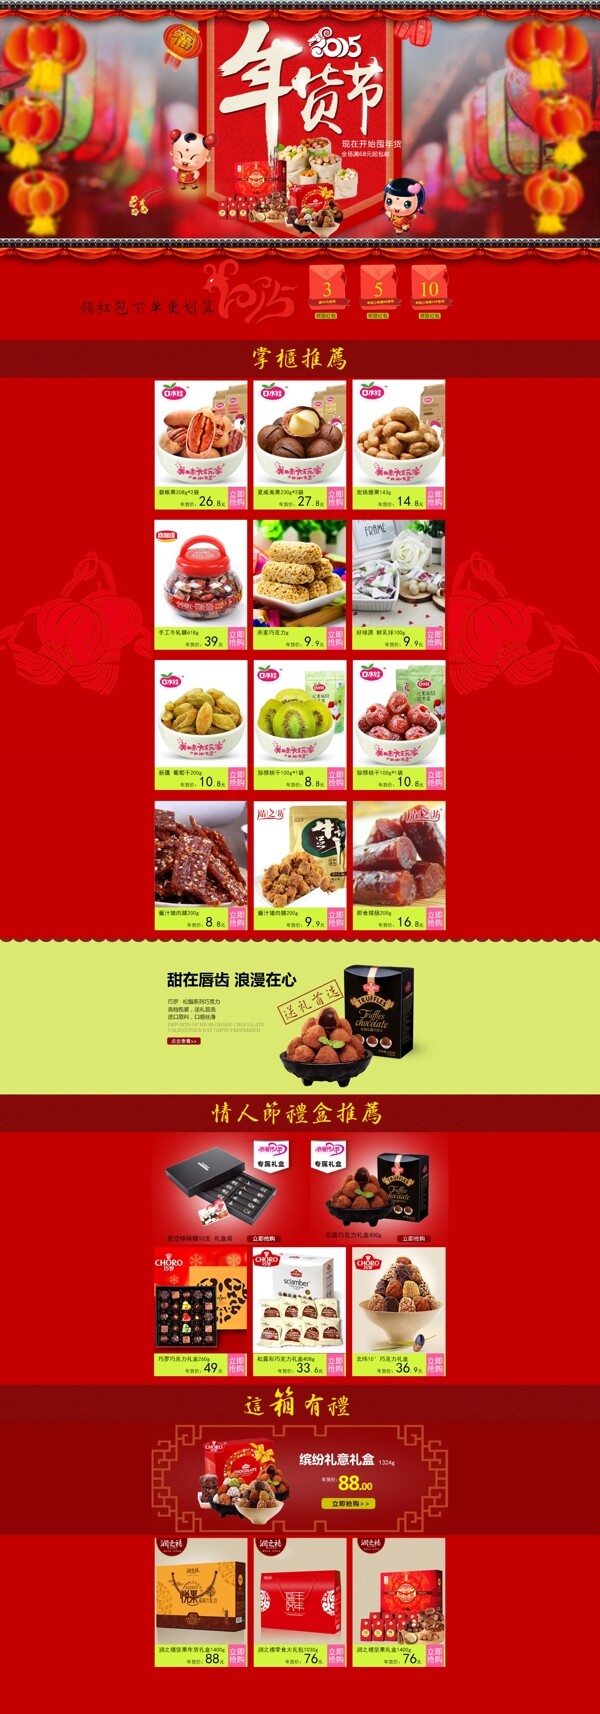 2015年淘宝美食类首页设计